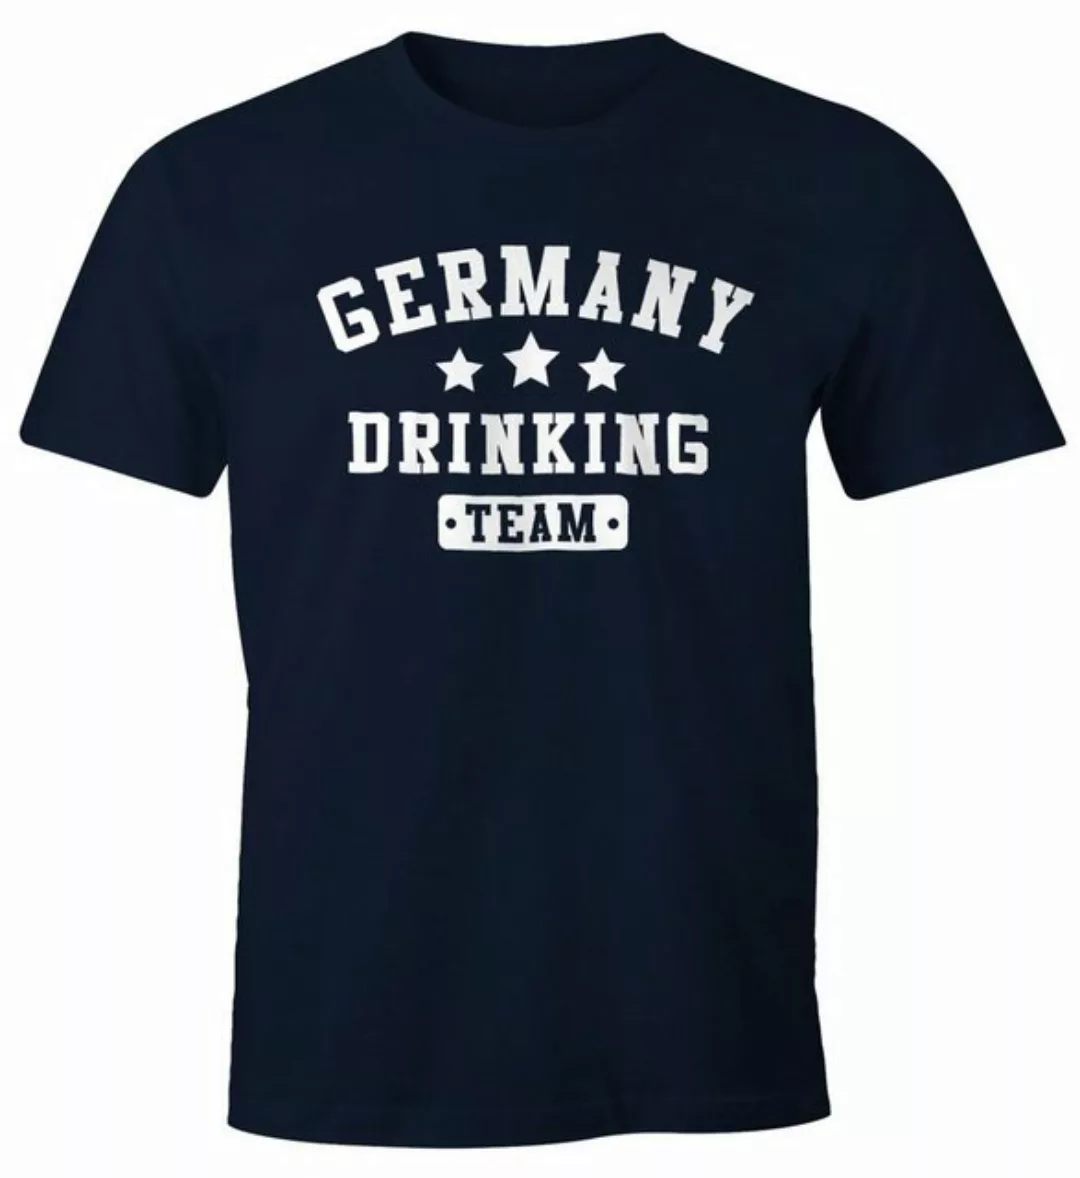 MoonWorks Print-Shirt Herren T-Shirt Germany Drinking Team Bier Fun-Shirt M günstig online kaufen